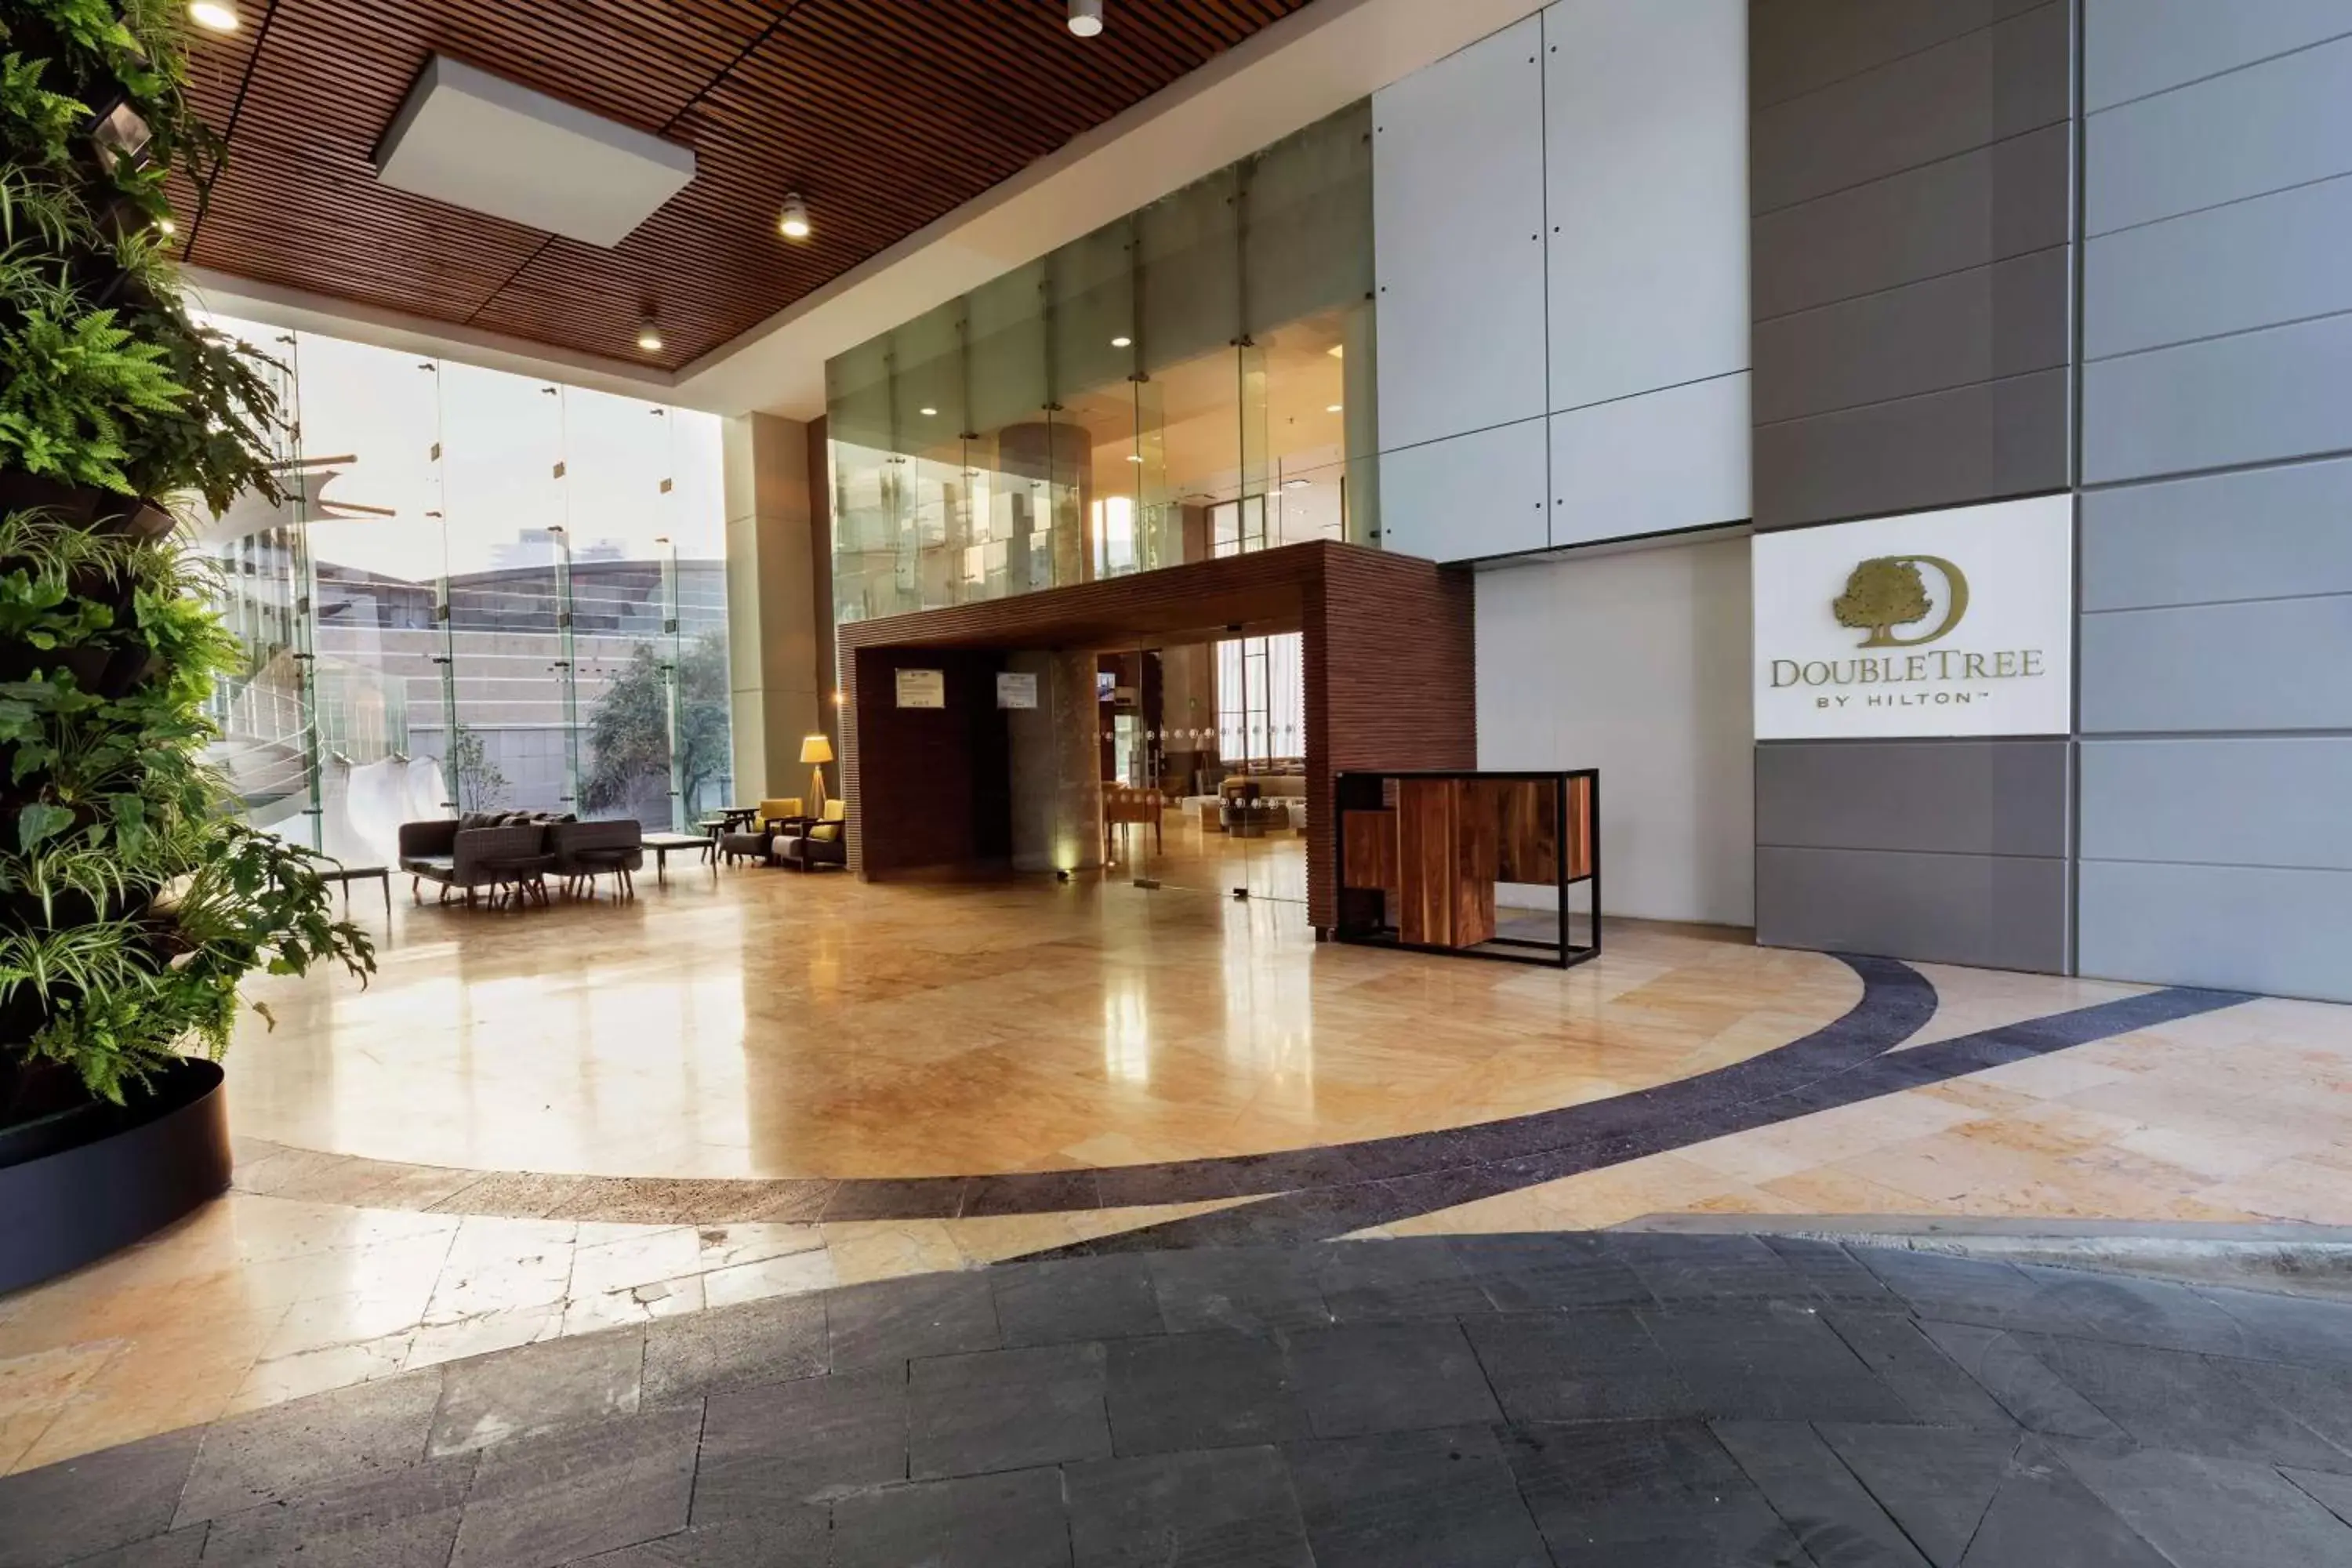 Lobby or reception, Lobby/Reception in Doubletree By Hilton Mexico City Santa Fe